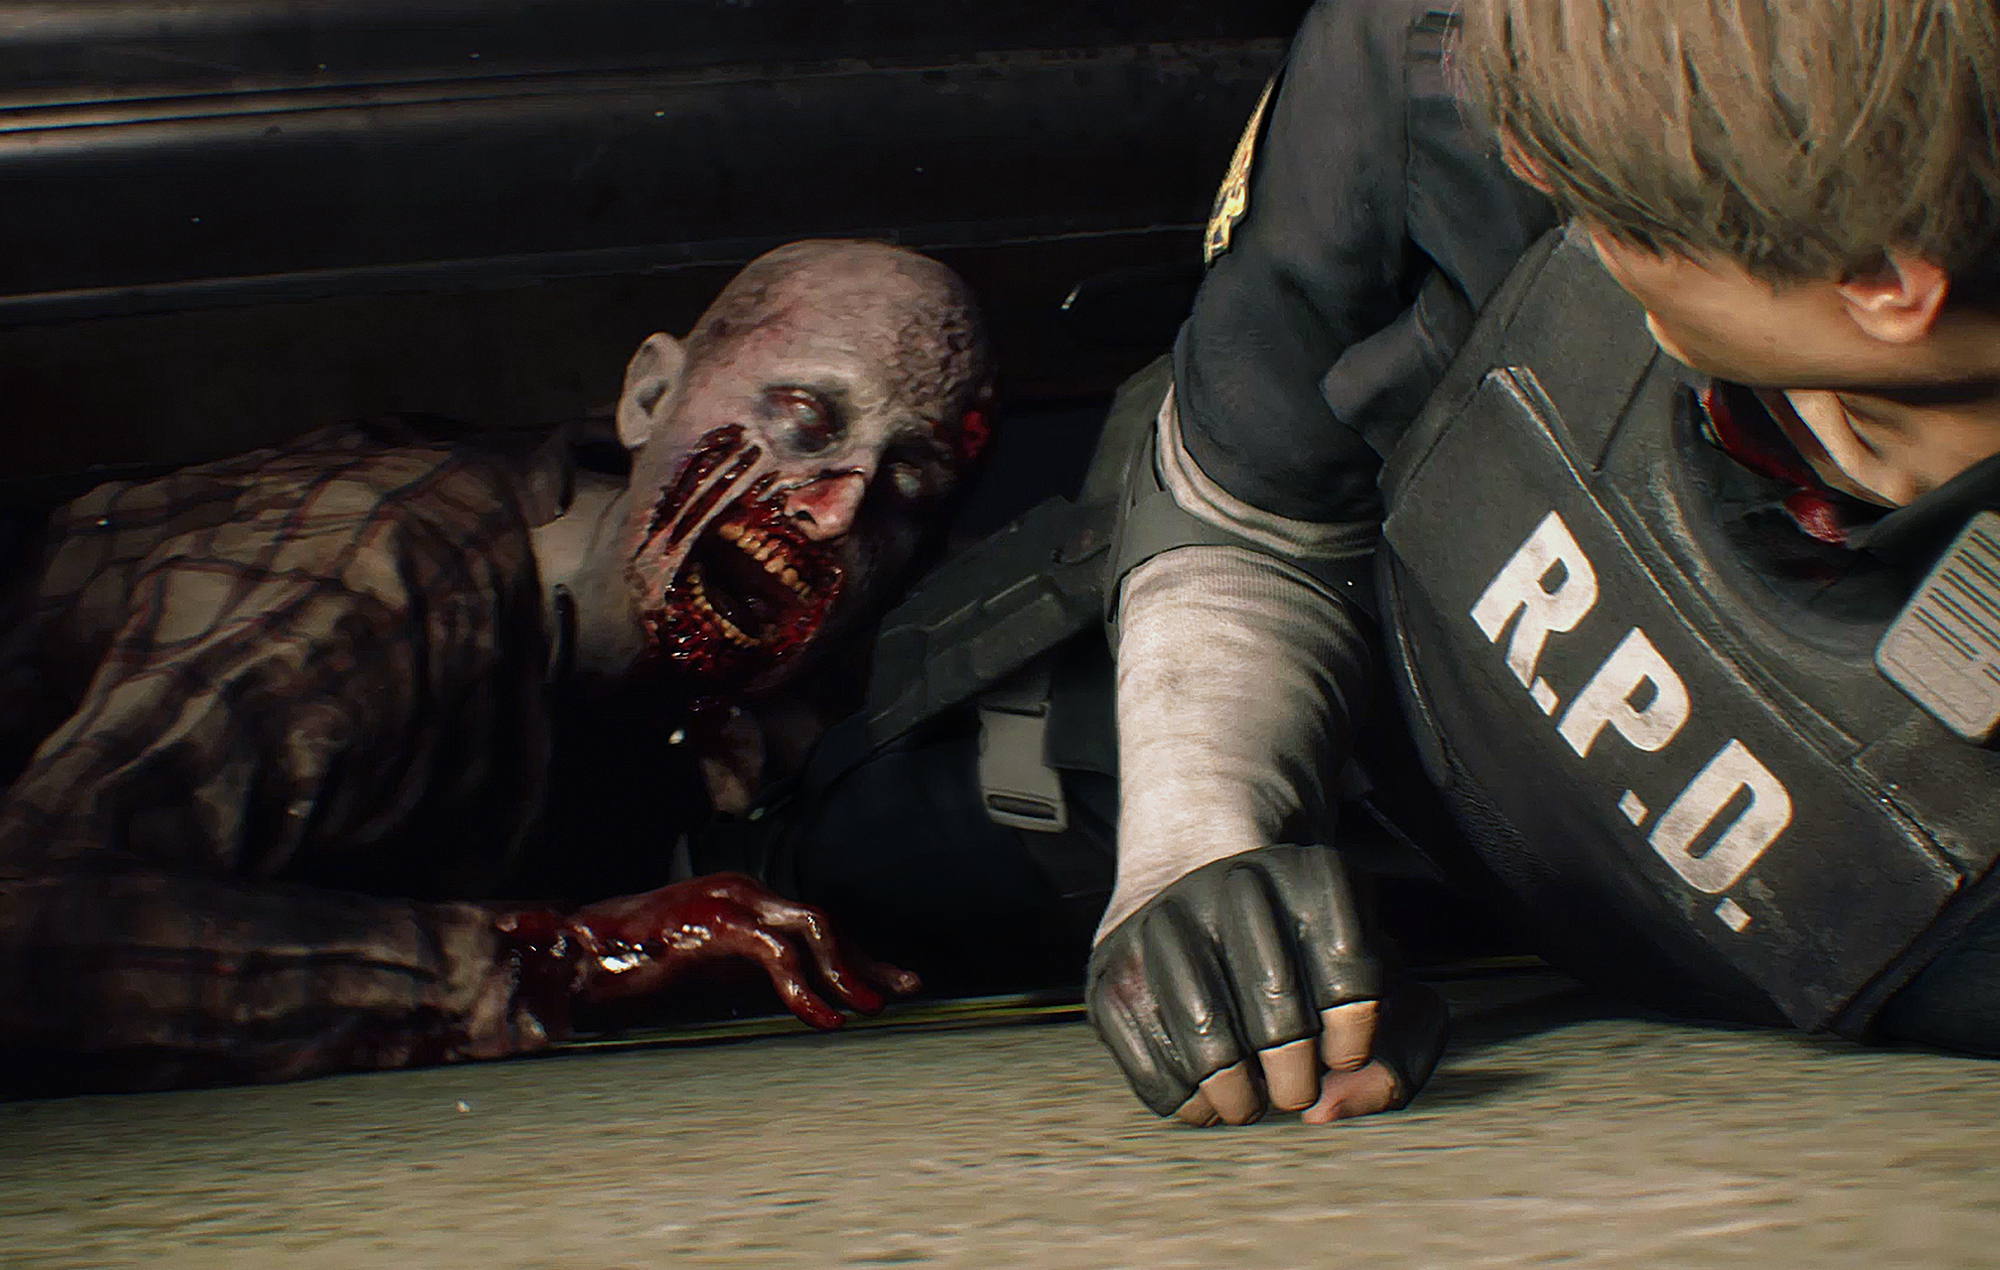 Las ediciones físicas de actualización de 'Resident Evil' para la próxima generación no están previstas "ahora mismo"